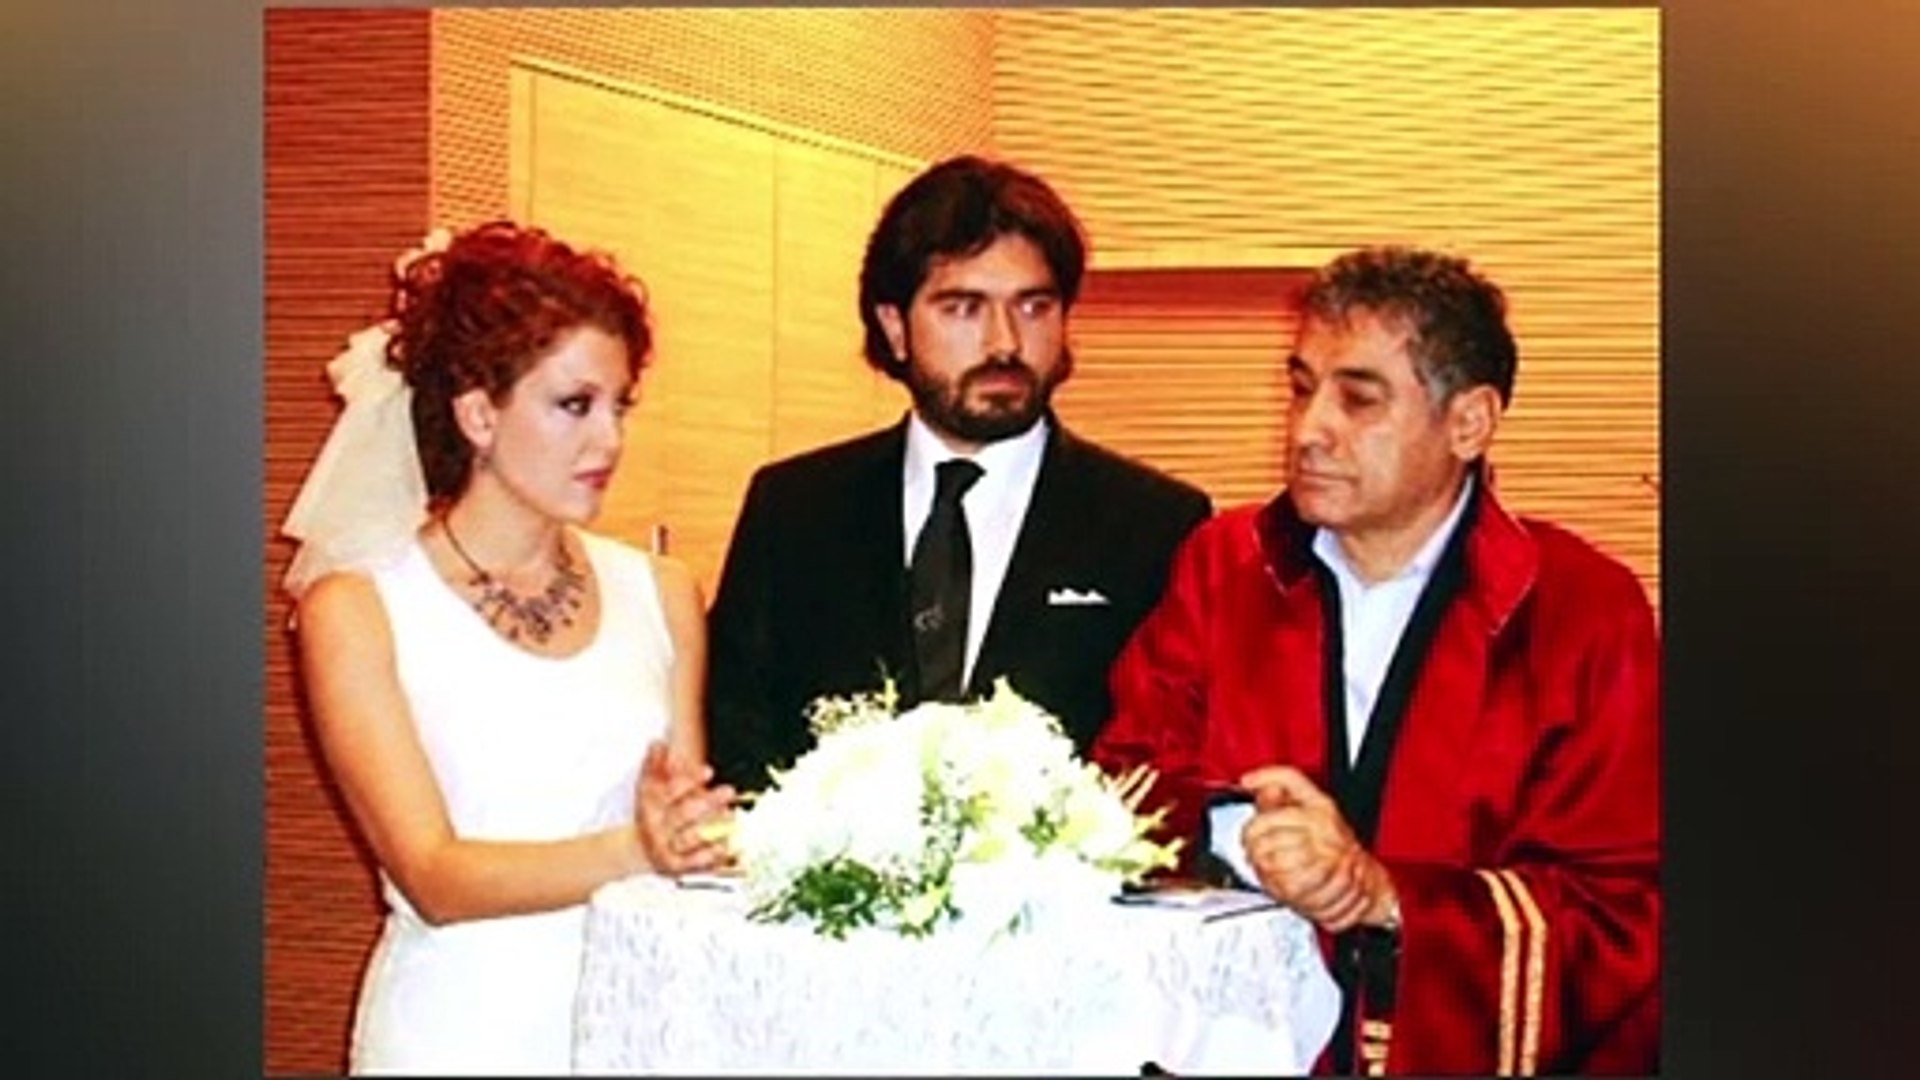 Nagehan Alçı, Rasim Ozan Kütahyalı'dan boşanmak için mahkemeye başvurdu  iddiası - Dailymotion Video